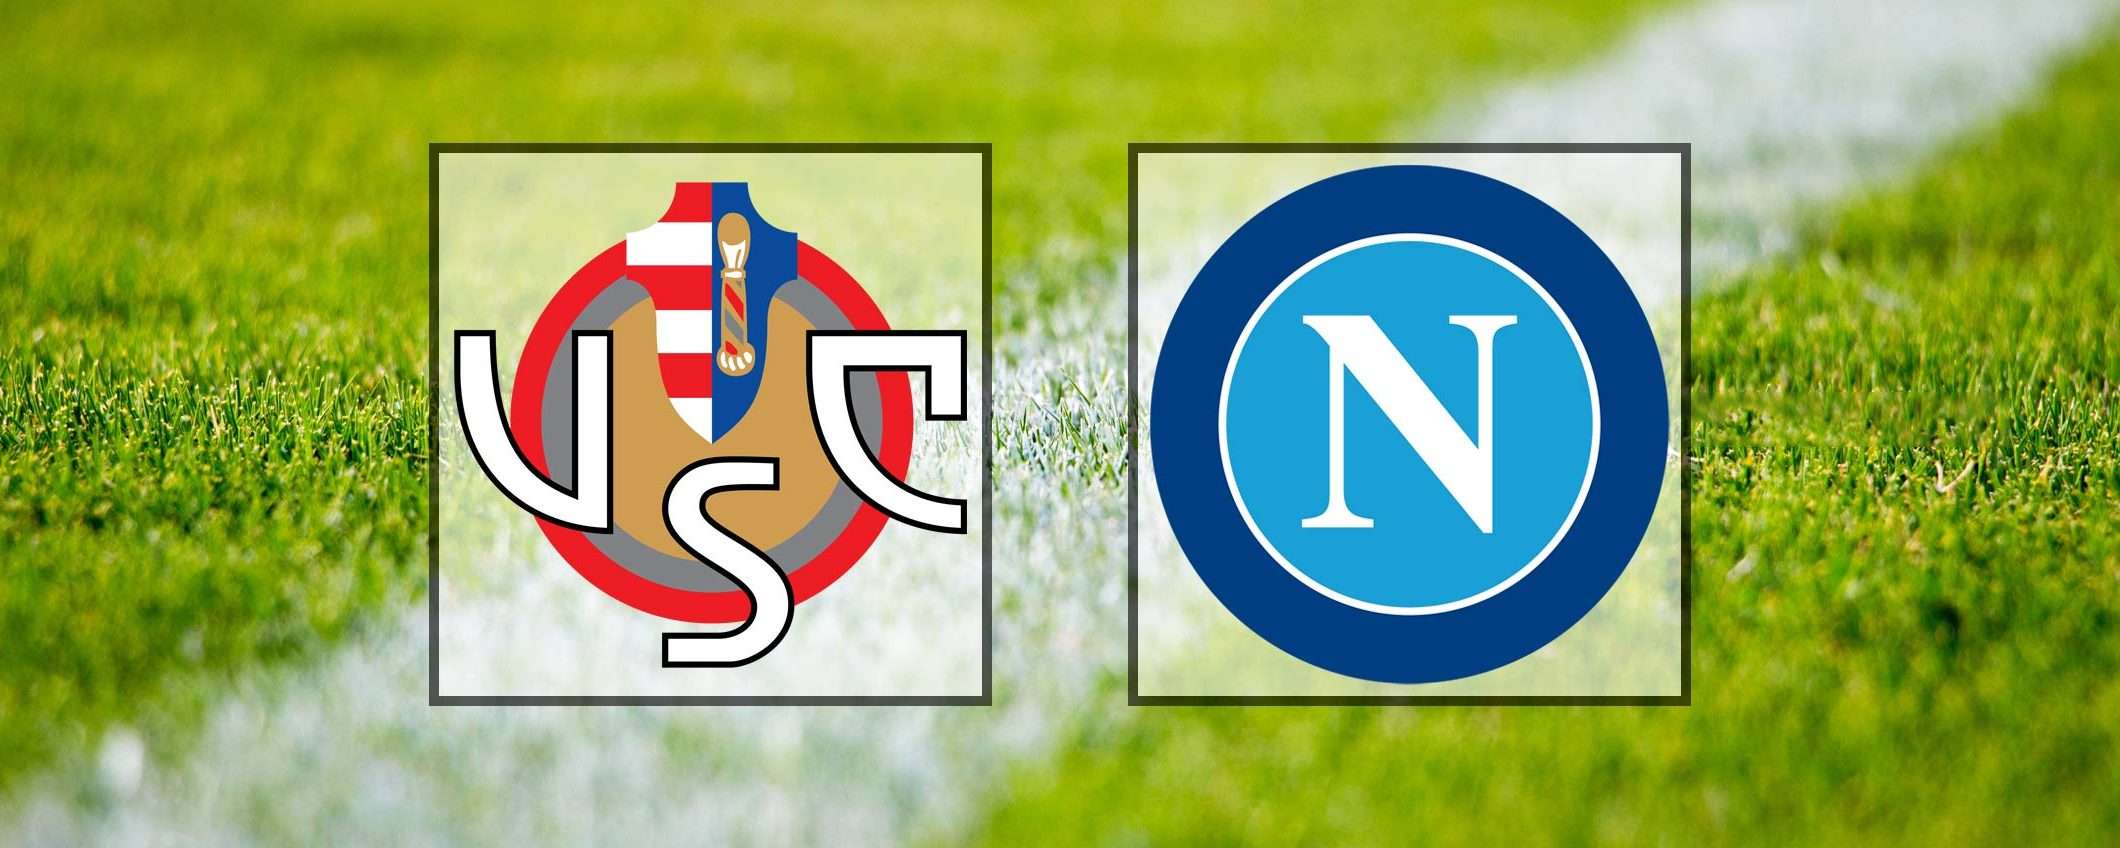 Come vedere Cremonese-Napoli in streaming (Serie A)